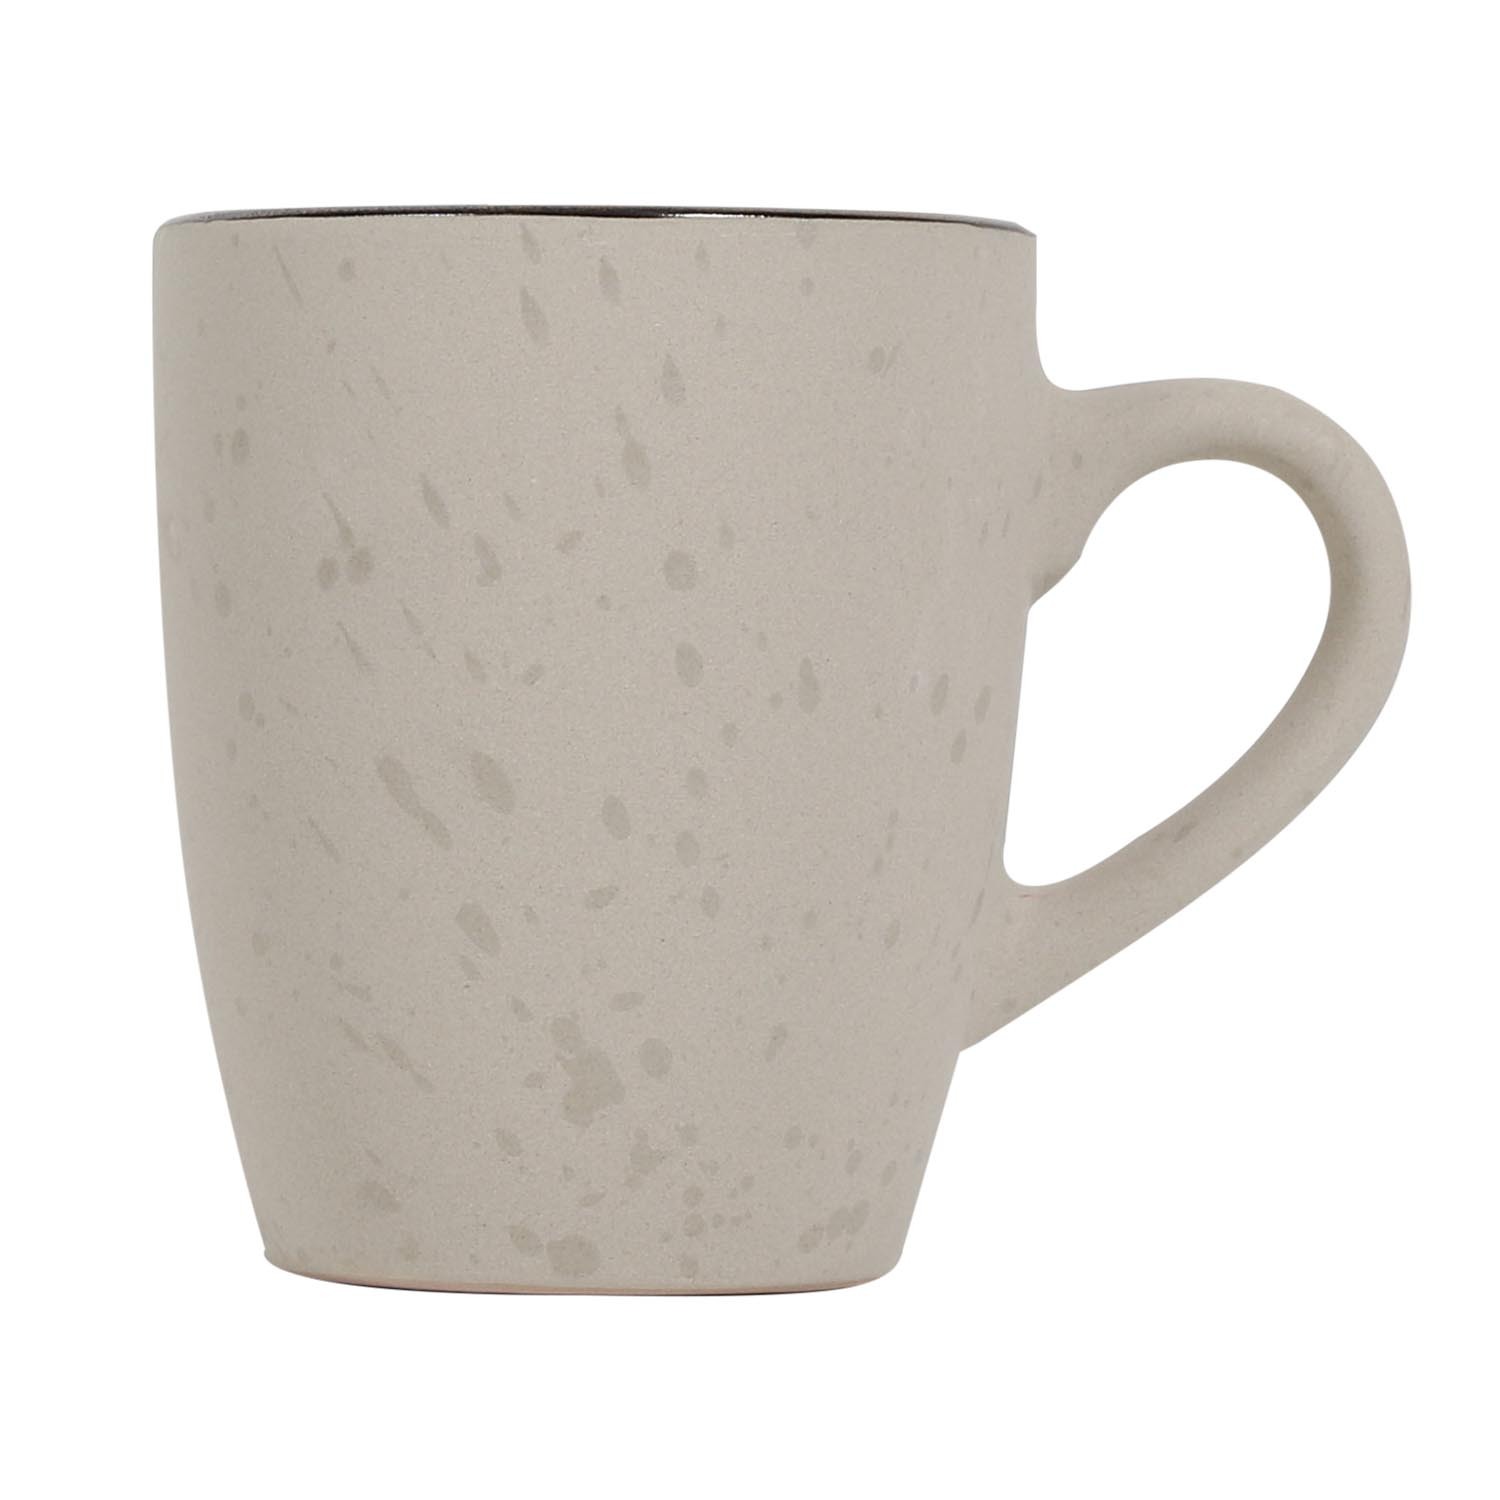 Omakase Stone Speckled Mug 4 Pack Image